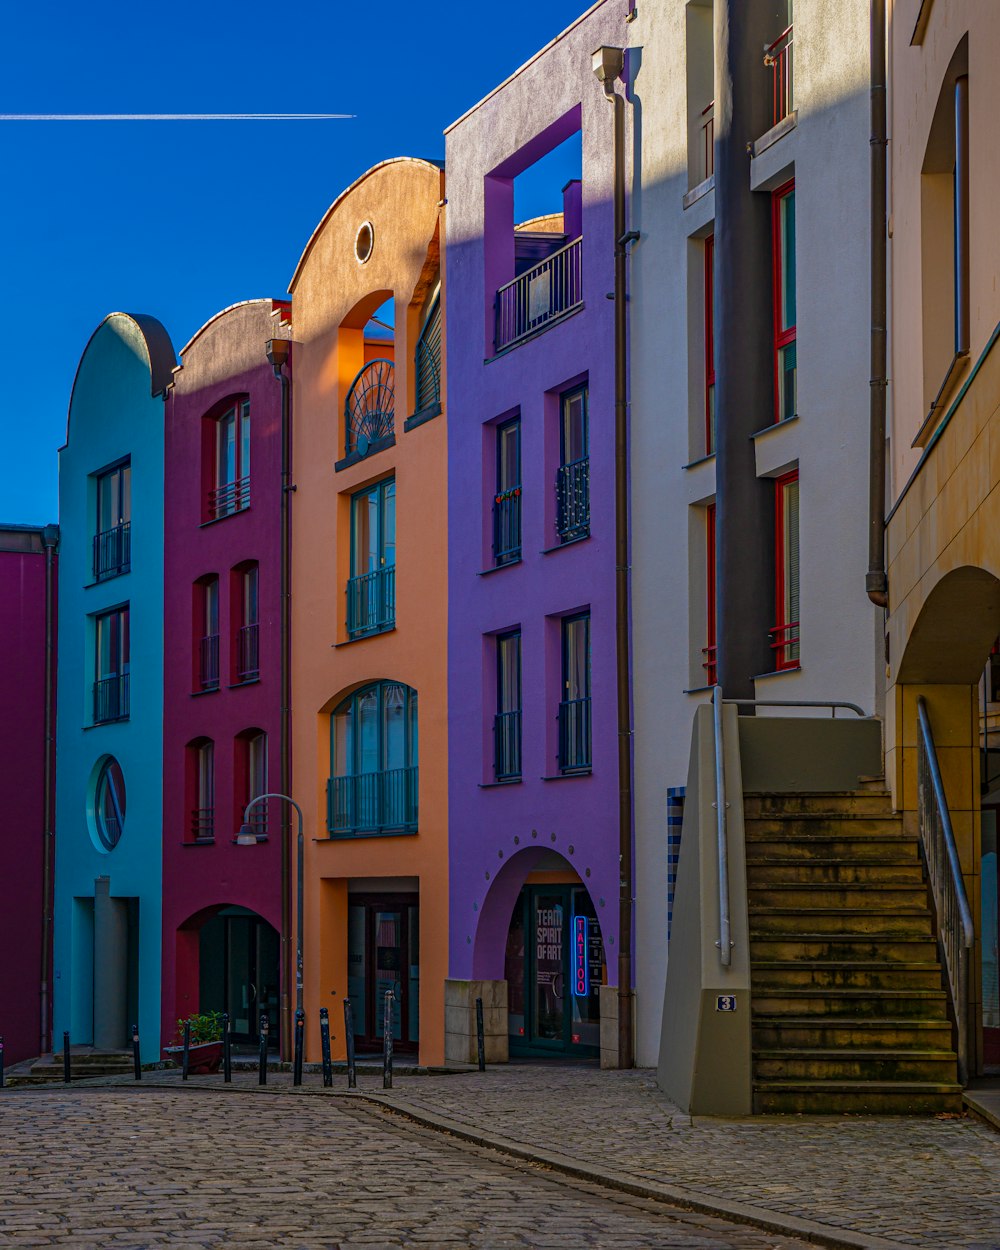 石畳の通りに並ぶ色とりどりの建物